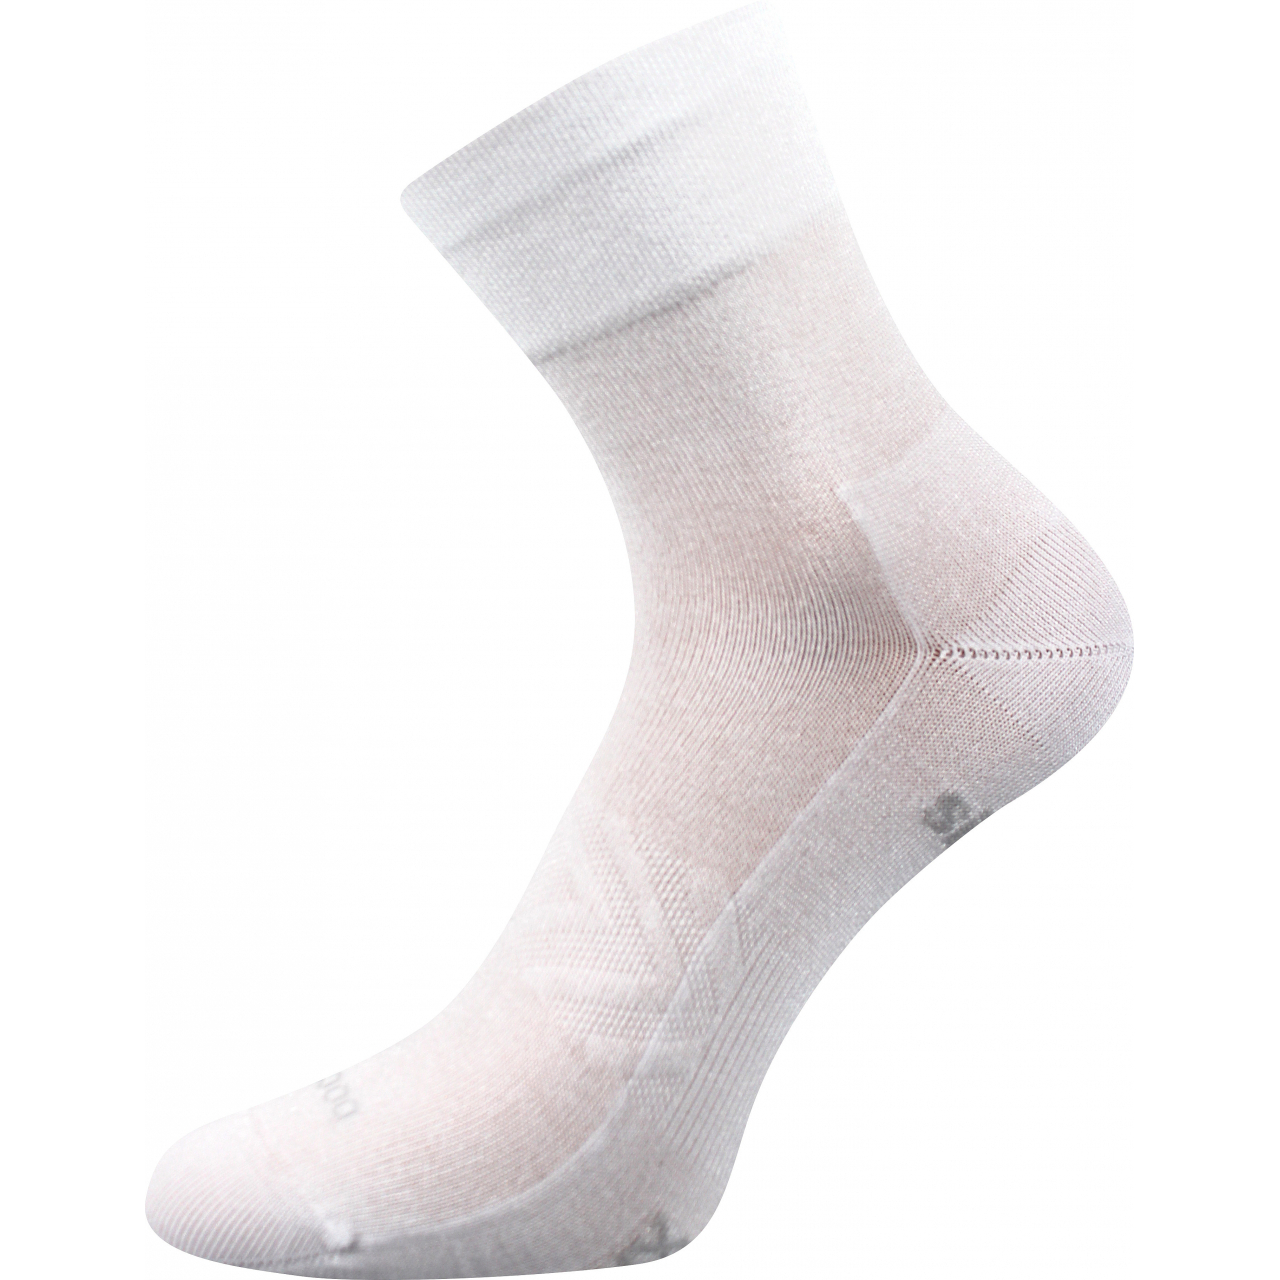 Ponožky sportovní unisex Voxx Baeron - bílé, 35-38